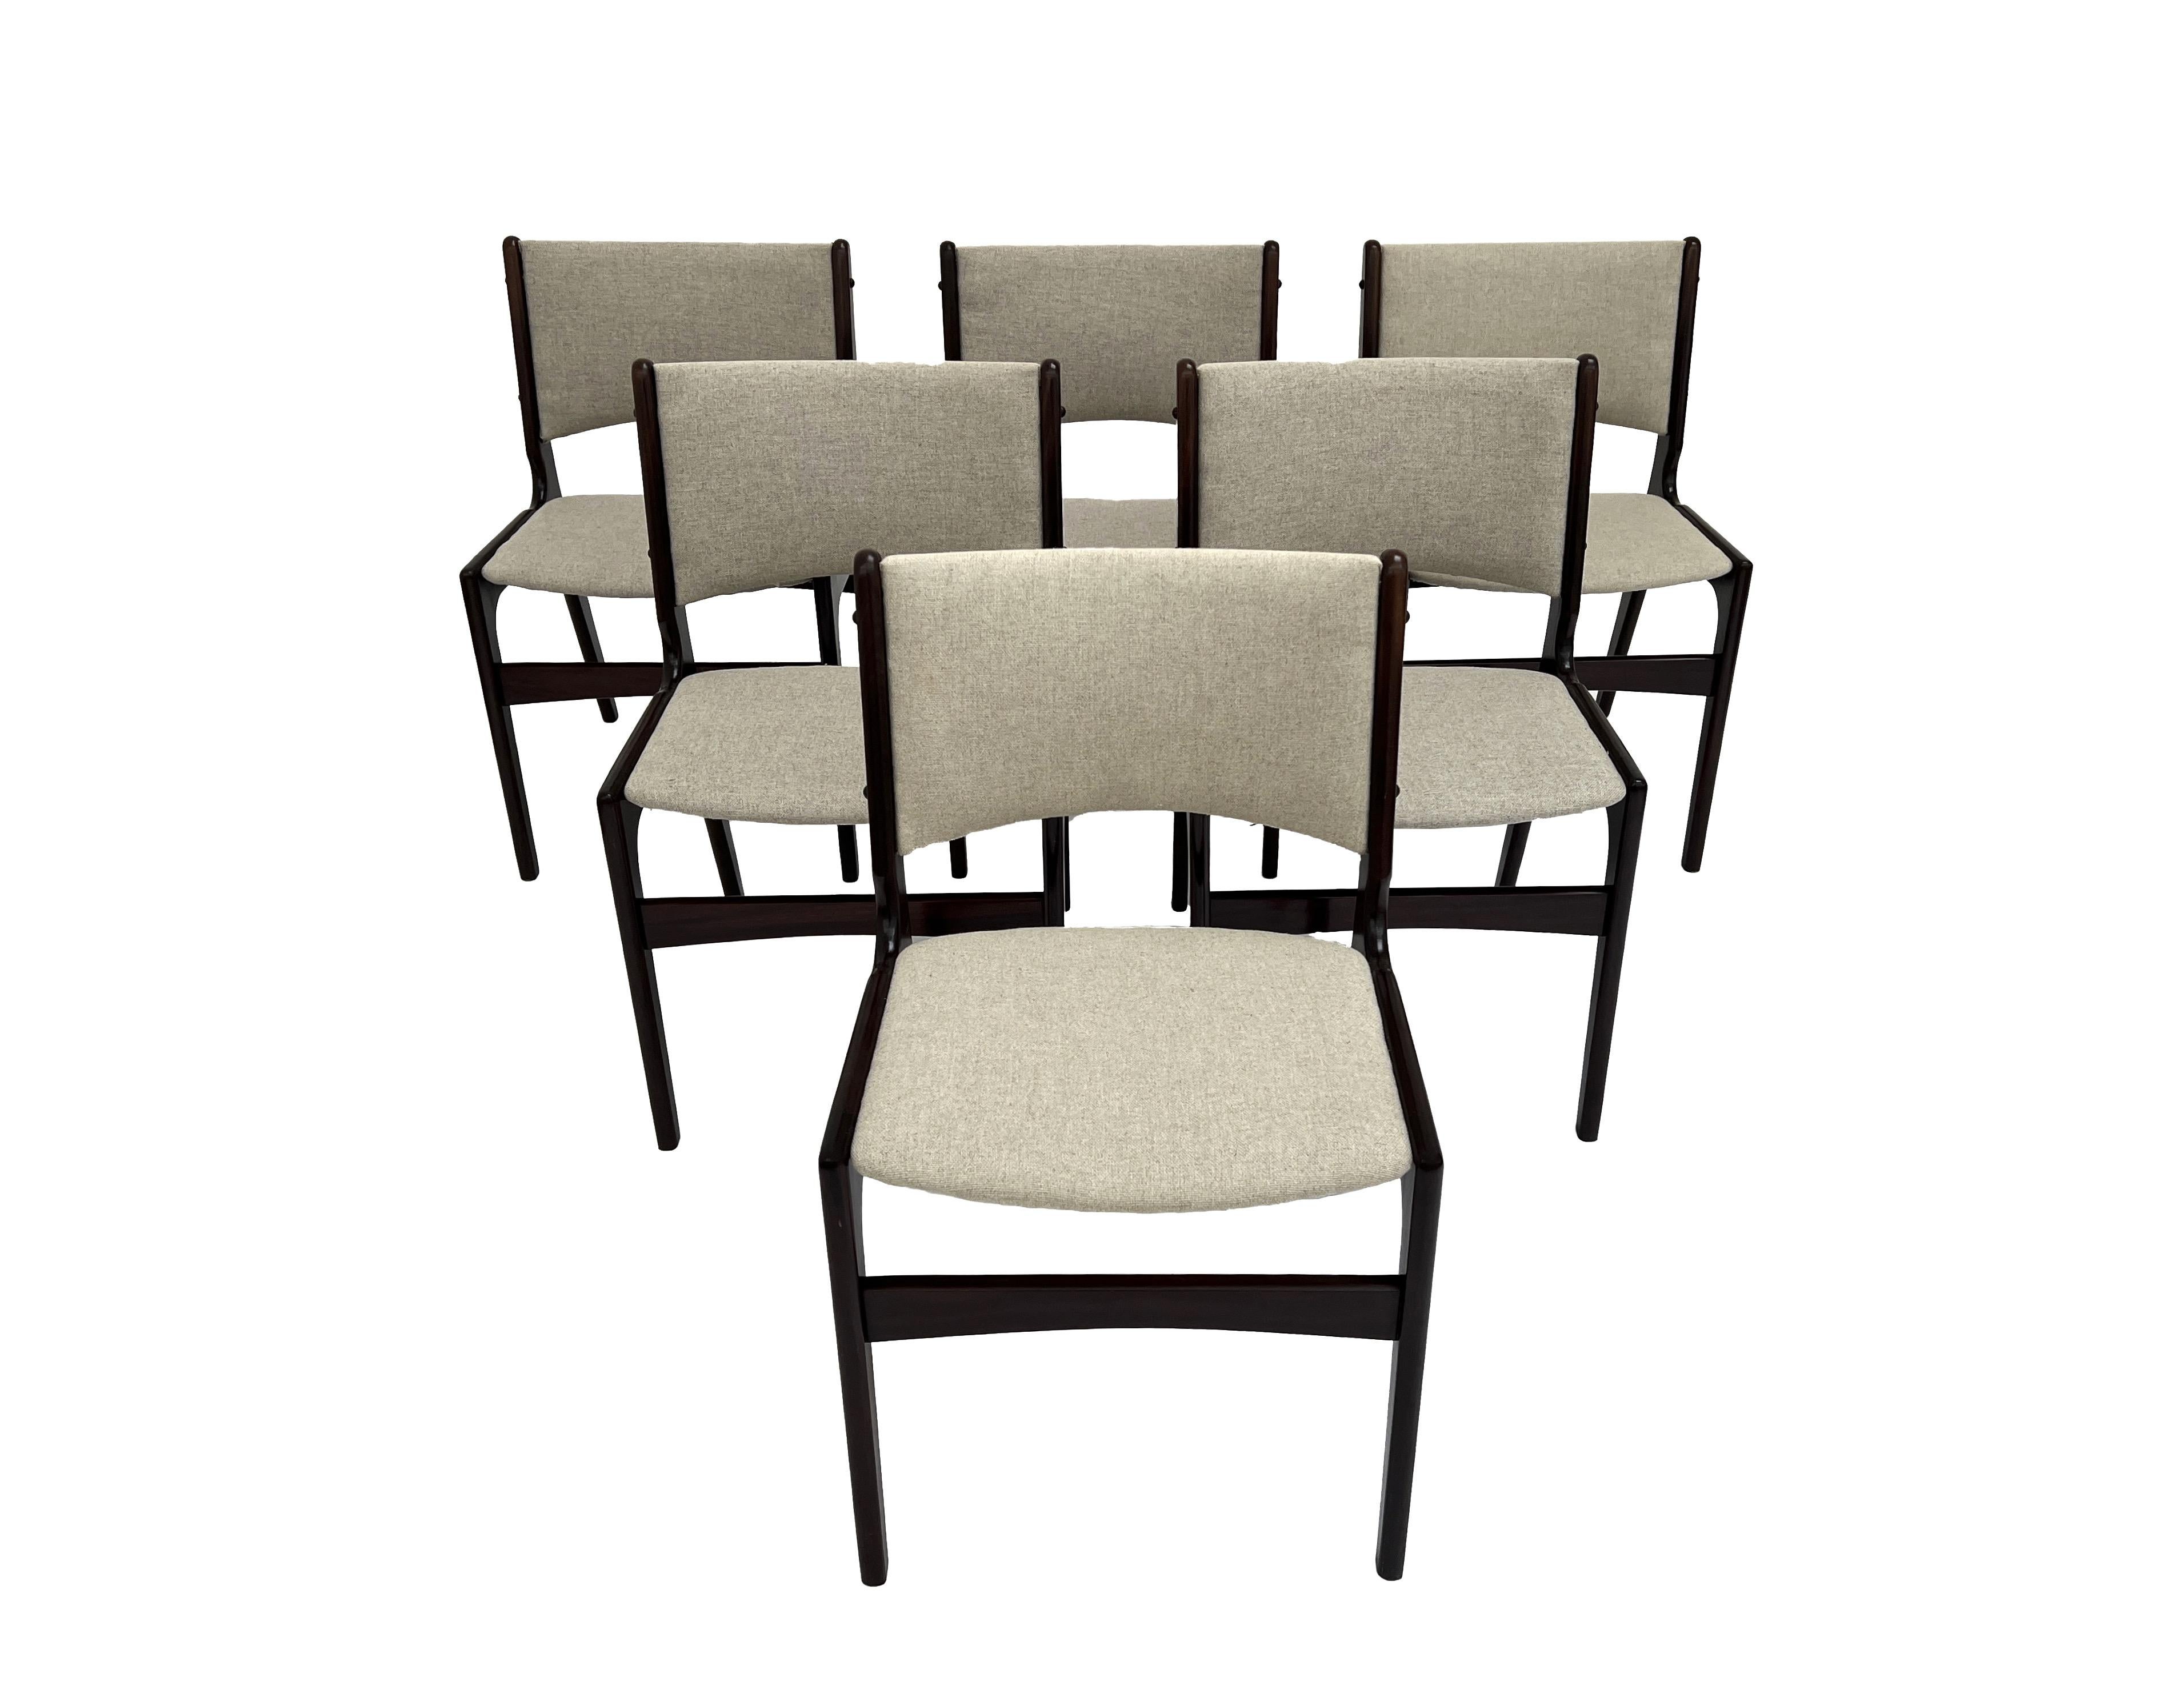 Un magnifique ensemble de 6 chaises de salle à manger en teck et laine crème, modèle 89, conçues par Erik Buch pour Anders Møbelfabrik. Ces chaises constitueraient un ajout élégant à n'importe quelle salle à manger.

Les chaises sont dotées de